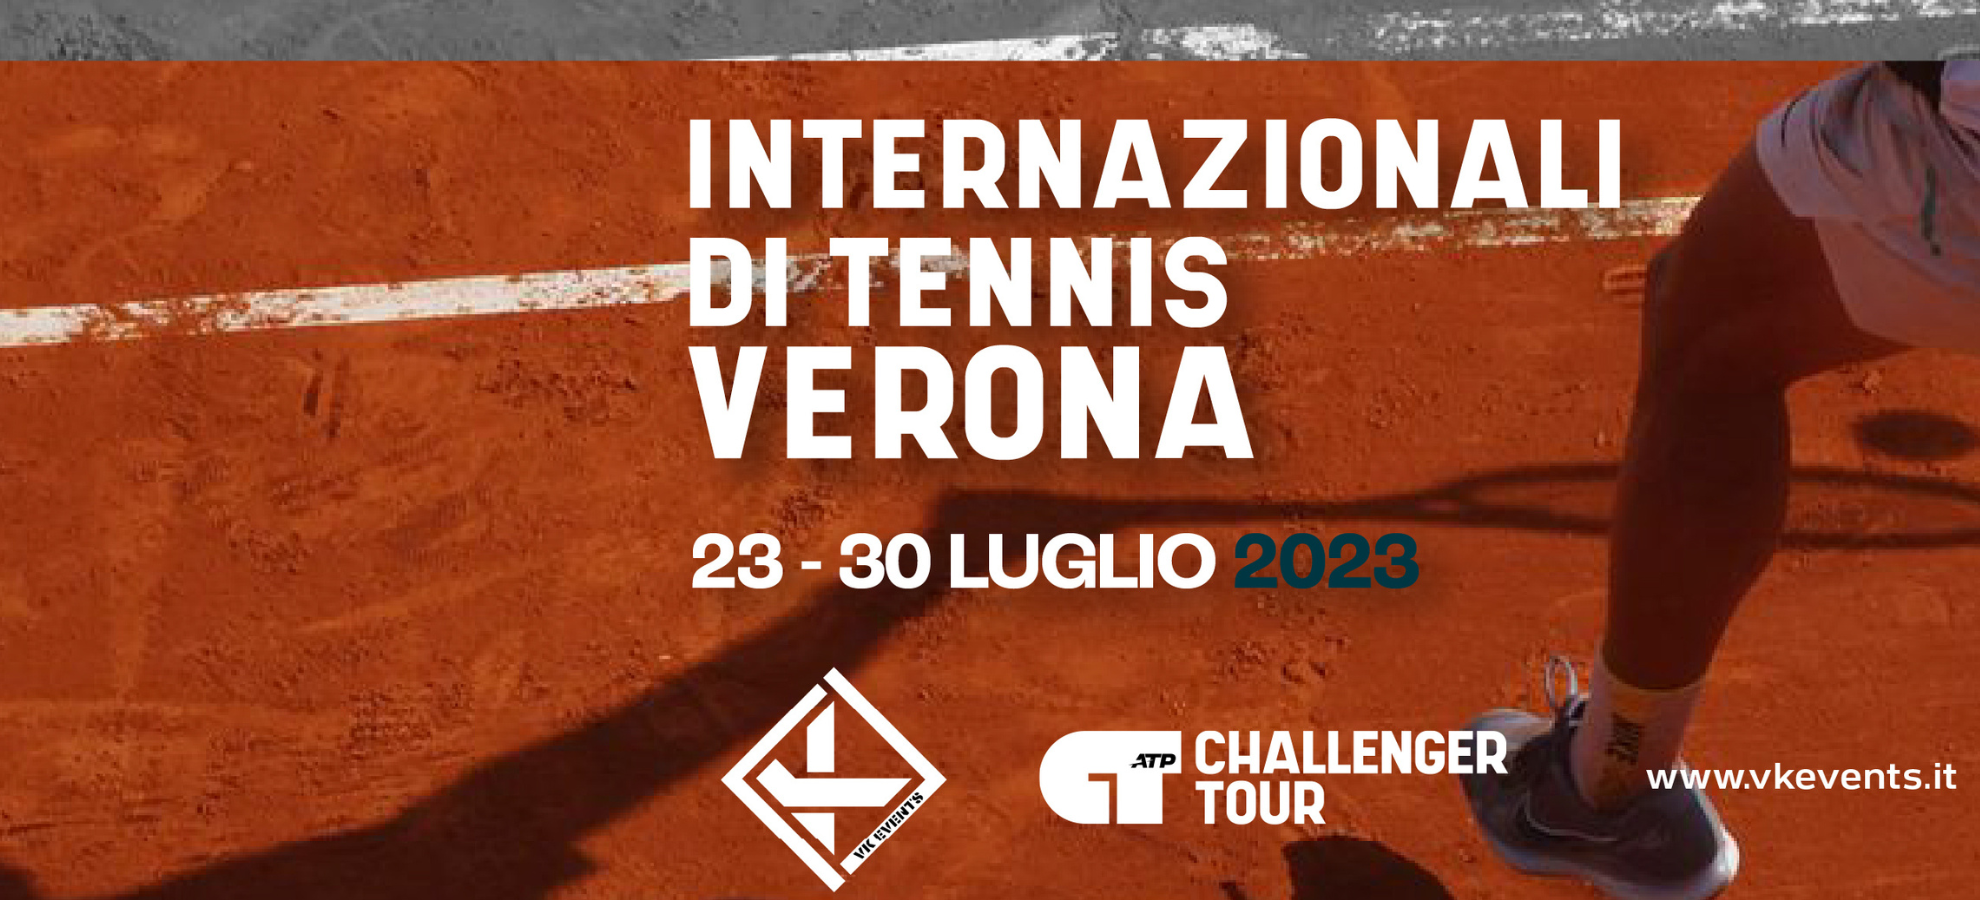 Internazionali di tennis 2023